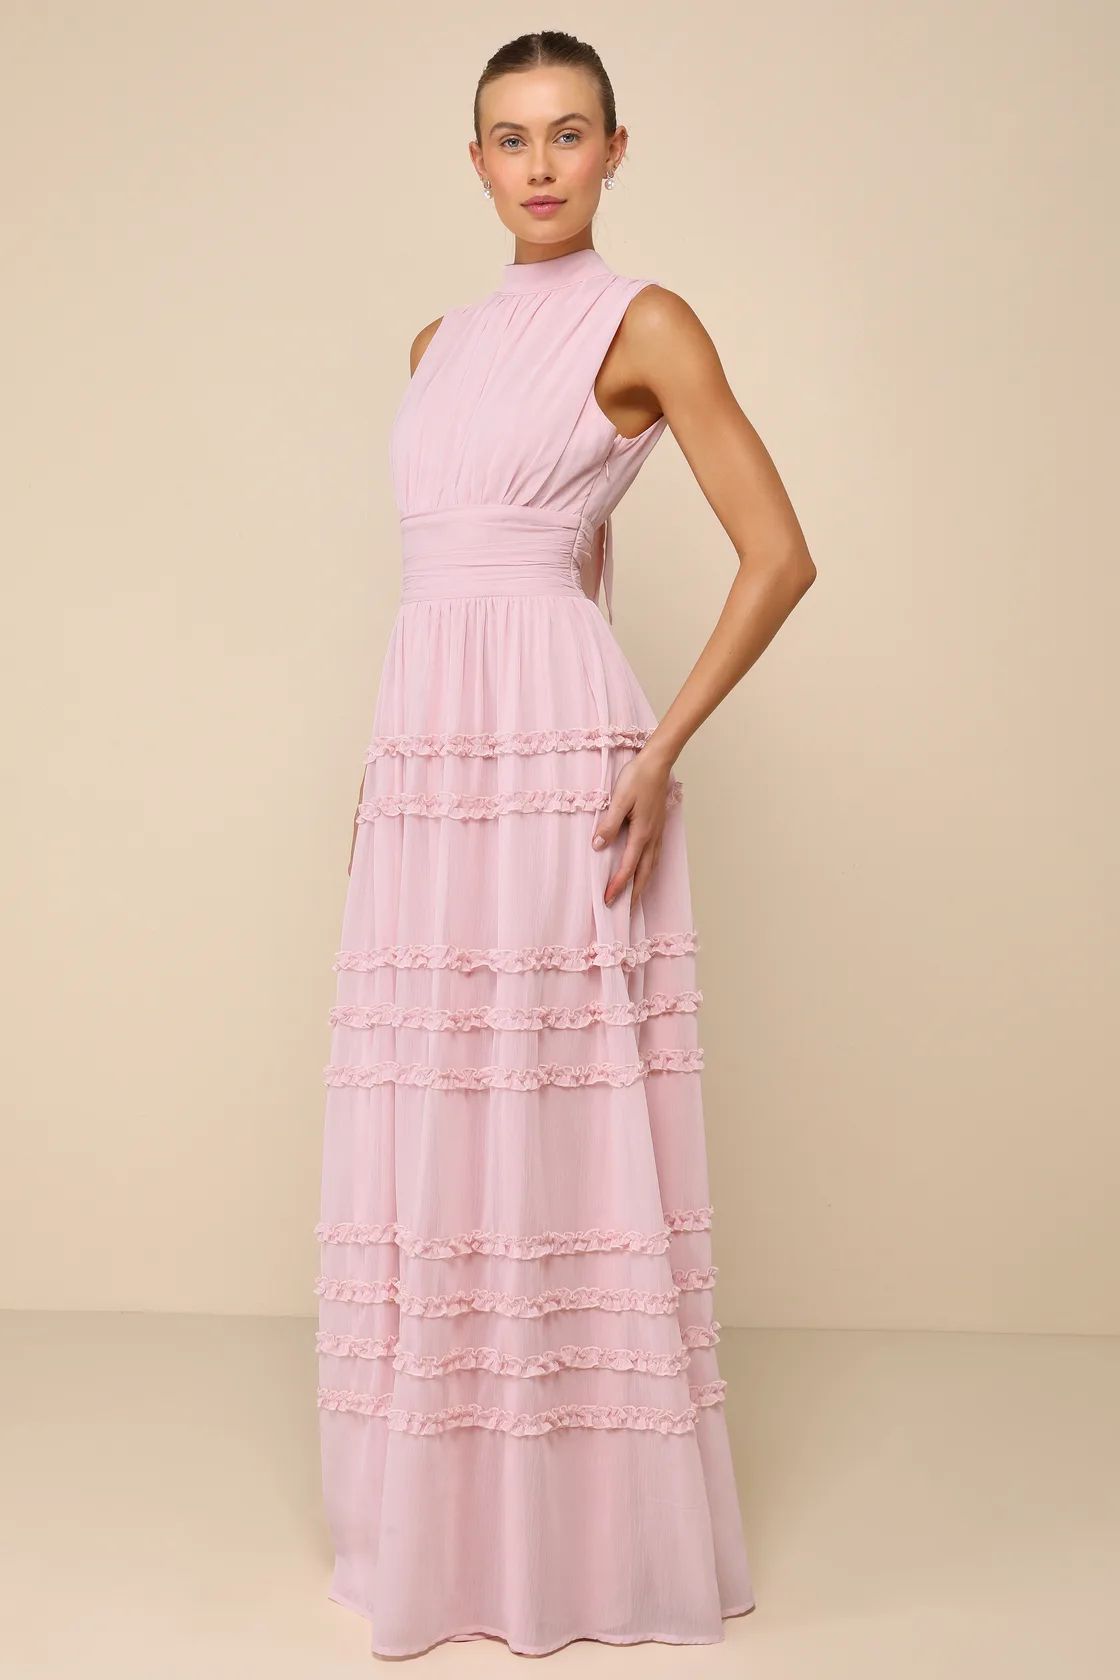 Enchantingly Sweet Blush Pink Chiffon Backless Maxi Dress | Lulus